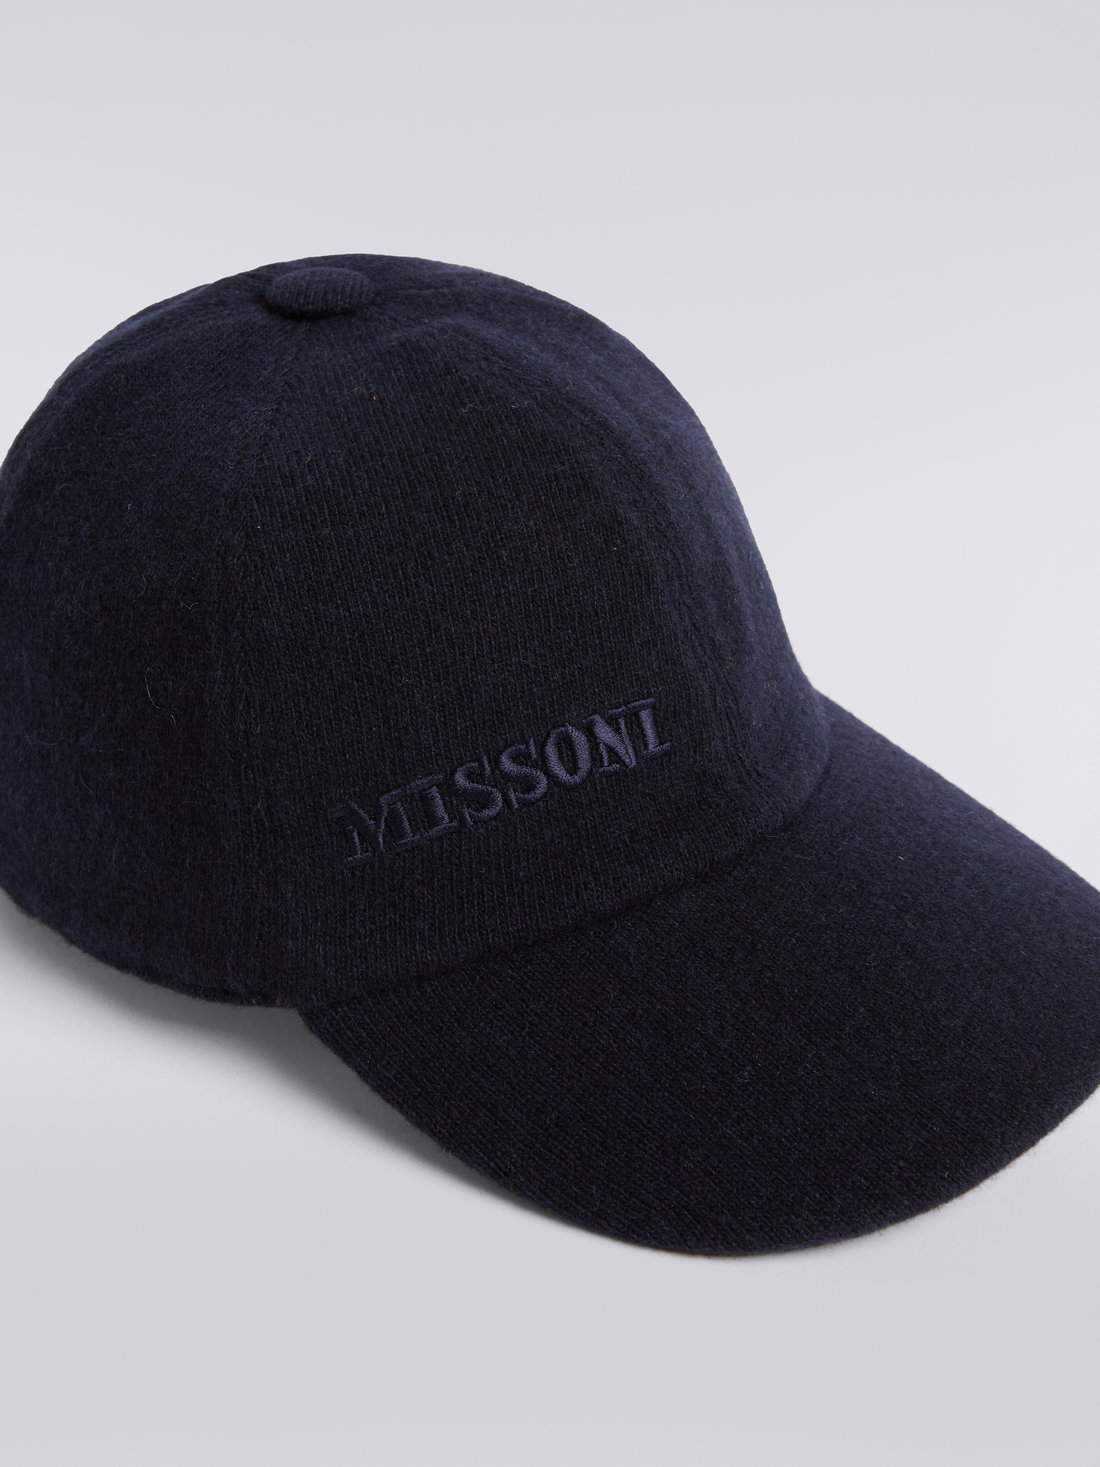 Cappello in cashmere con visiera e logo, Multicolore  - 8053147023199 - 2